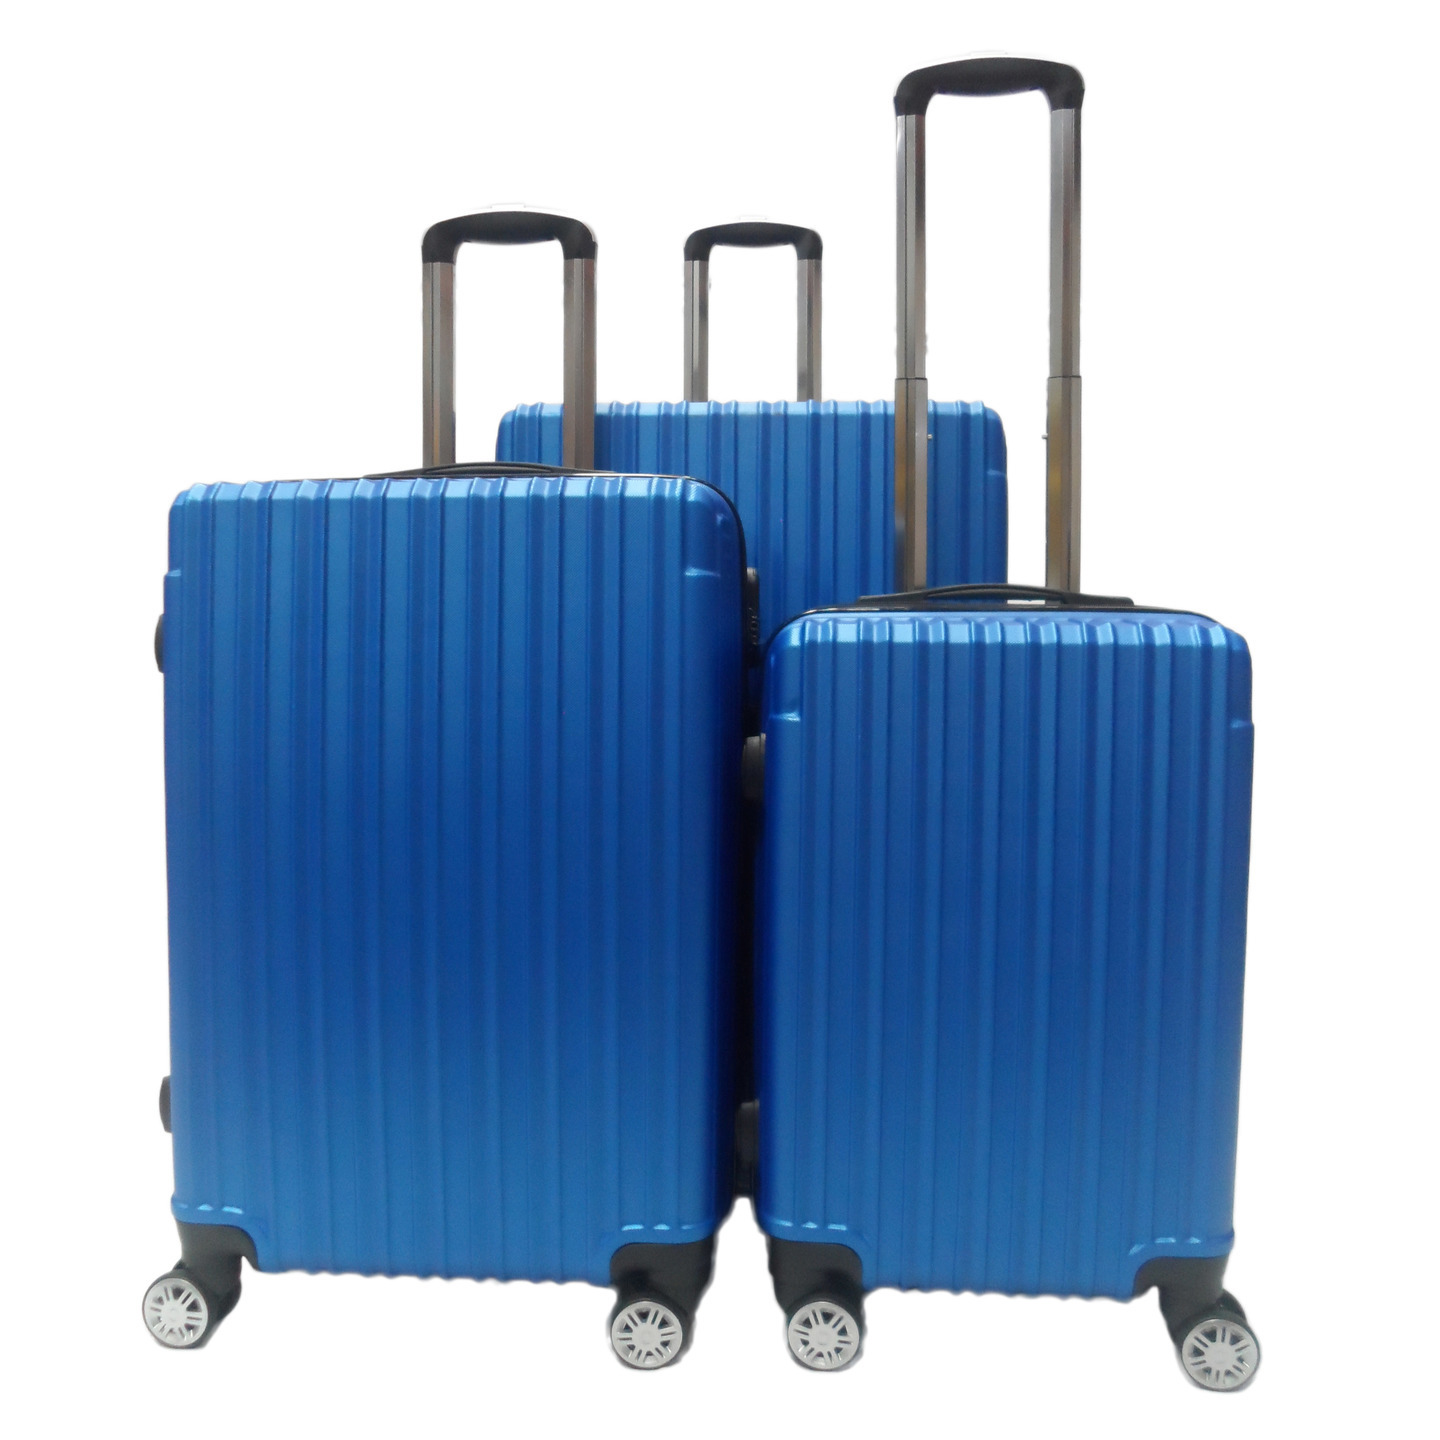 RV-60 Elegant Hard Box Luggage - Blue 20 inch,24 inch,28 inch